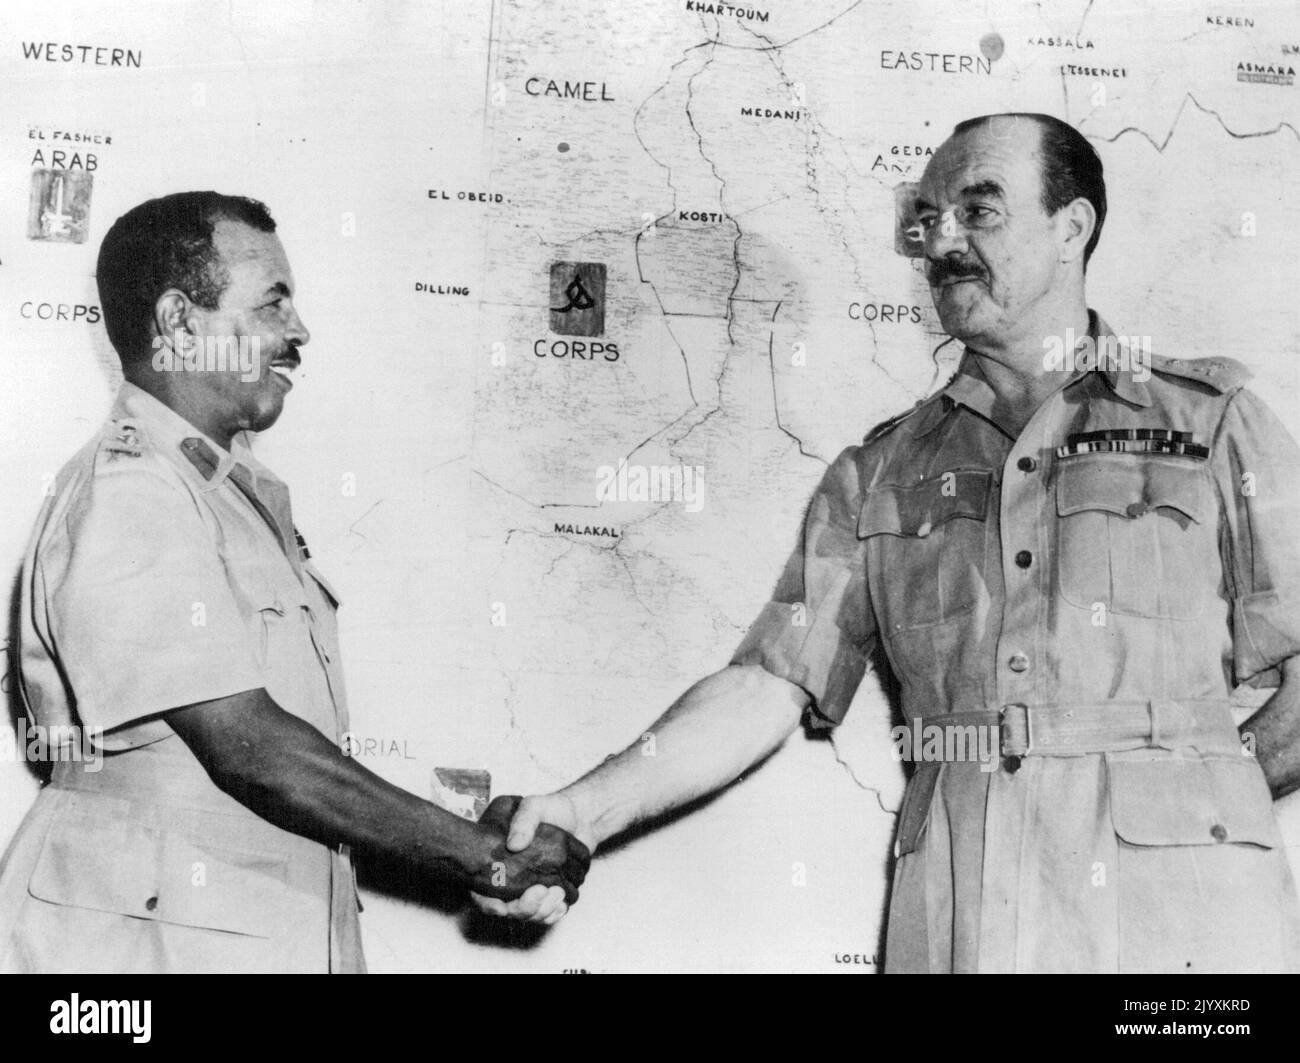 Le général britannique vole du Soudan -- le général de division R.L. Scoones, C.B., D. S. O., O. B. E., dit adieu à son commandant adjoint, le brigadier Ahmed Pasha Mohammed, O. B. E., qui prend le commandement. Ce changement s'inscrit dans le cadre de la politique de 'Dudanisation' du contrôle des forces militaires au Soudan. Le général Scoones est retourné au Royaume-Uni par avion de la RAF depuis l'aéroport de Khartoum. En arrière-plan se trouve une carte montrant le quartier général de la province du corps de la Force de défense du Soudan. 17 août 1954. (Photo de United Press photo). Banque D'Images